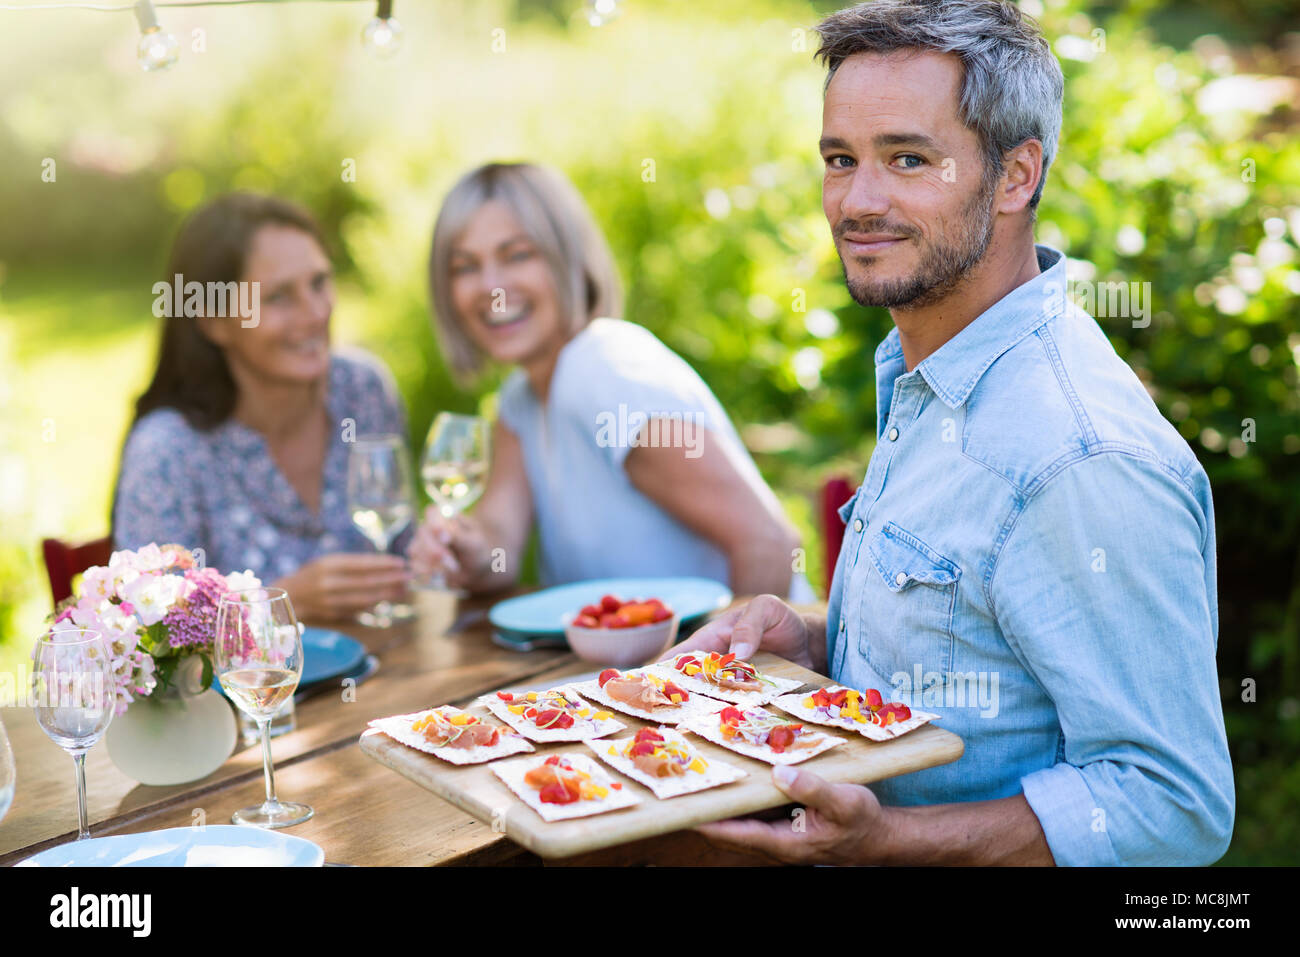 Gruppo di amici in quarantenni si sono riuniti intorno ad un tavolo in giardino per condividere un pasto. Un uomo offre spuntini per gli ospiti mentre guardando la telecamera Foto Stock